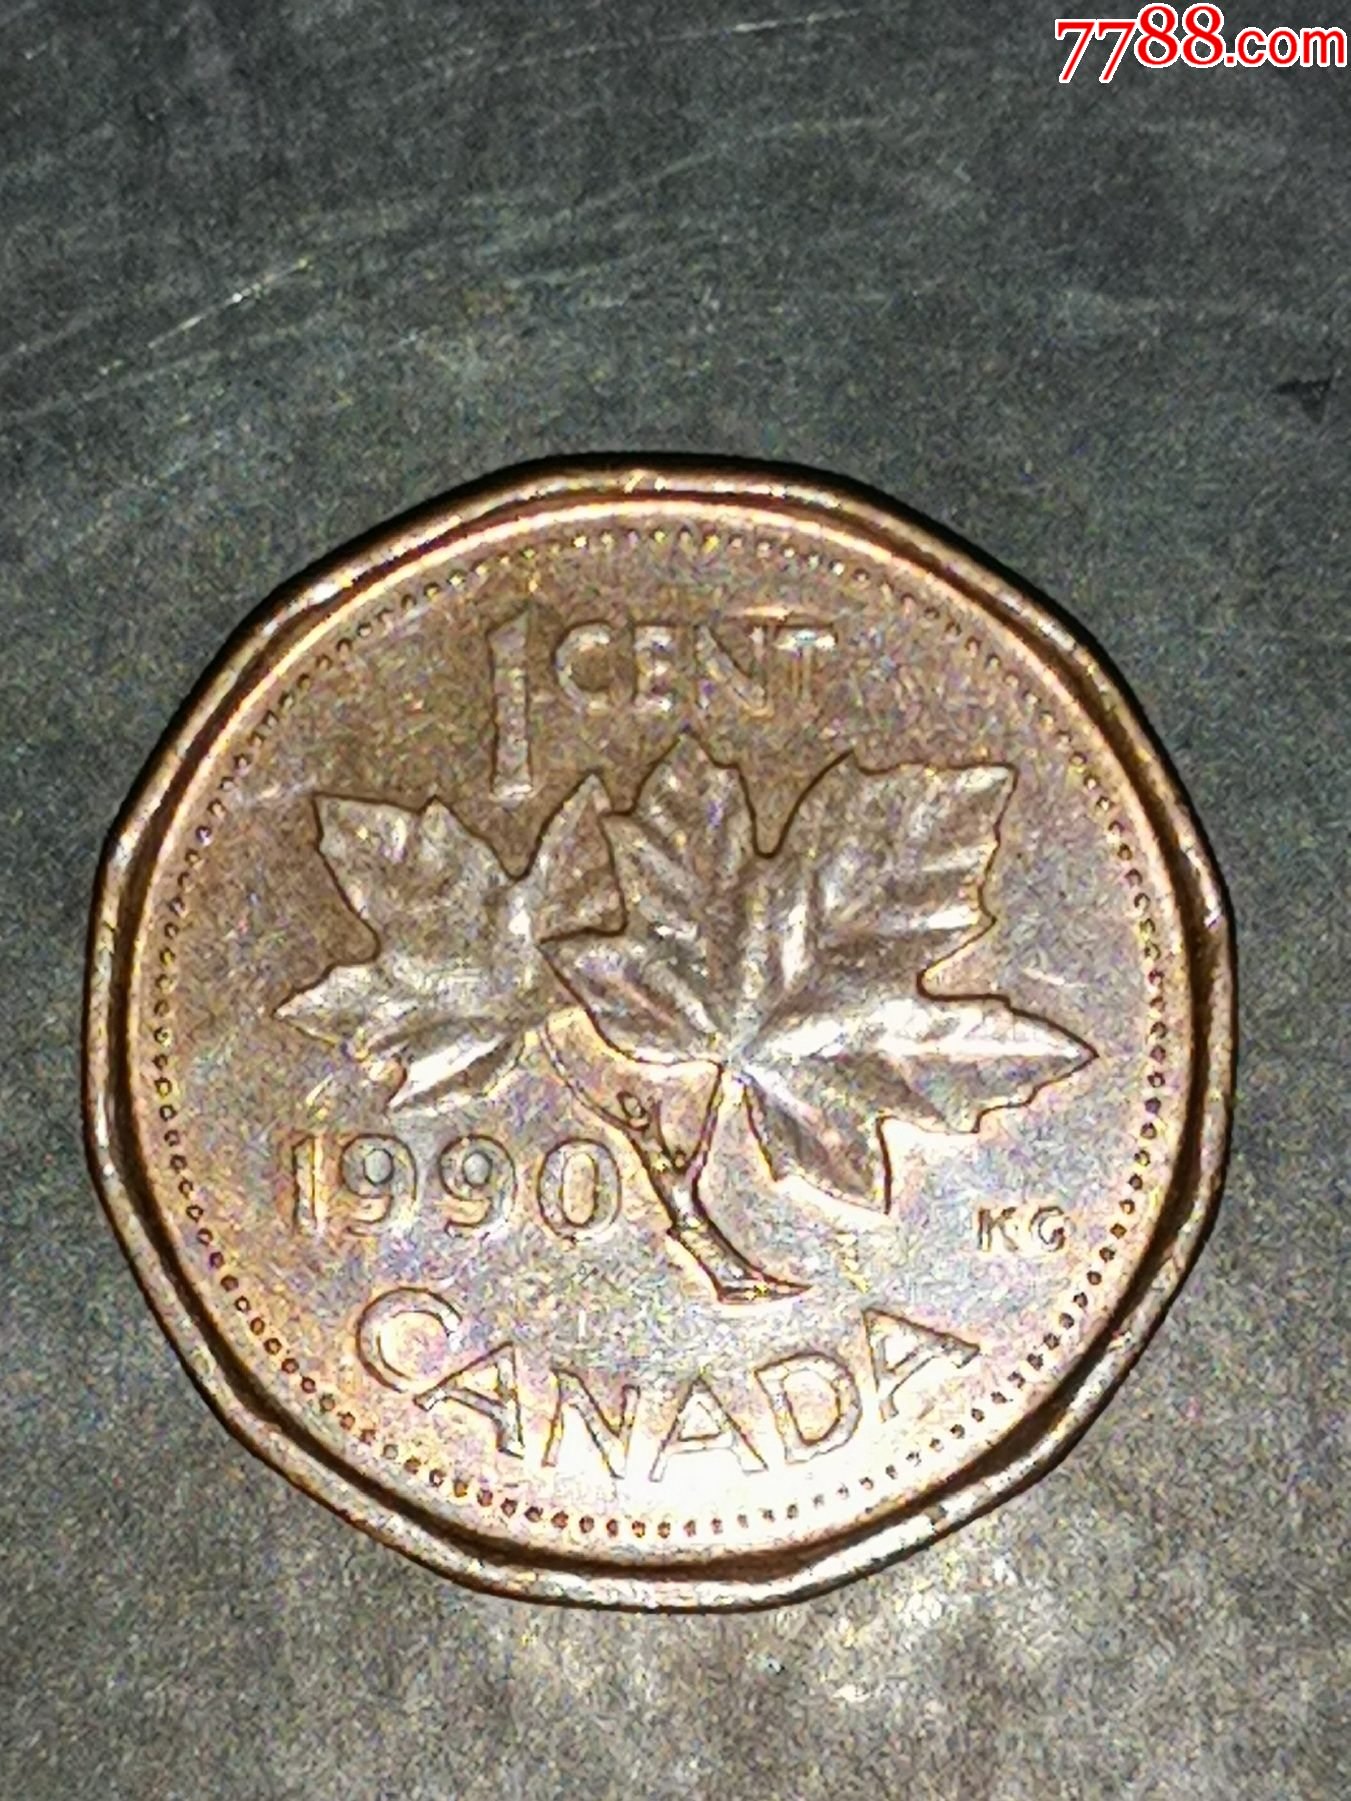 加拿大硬币_各国钱币图片 - 随意云